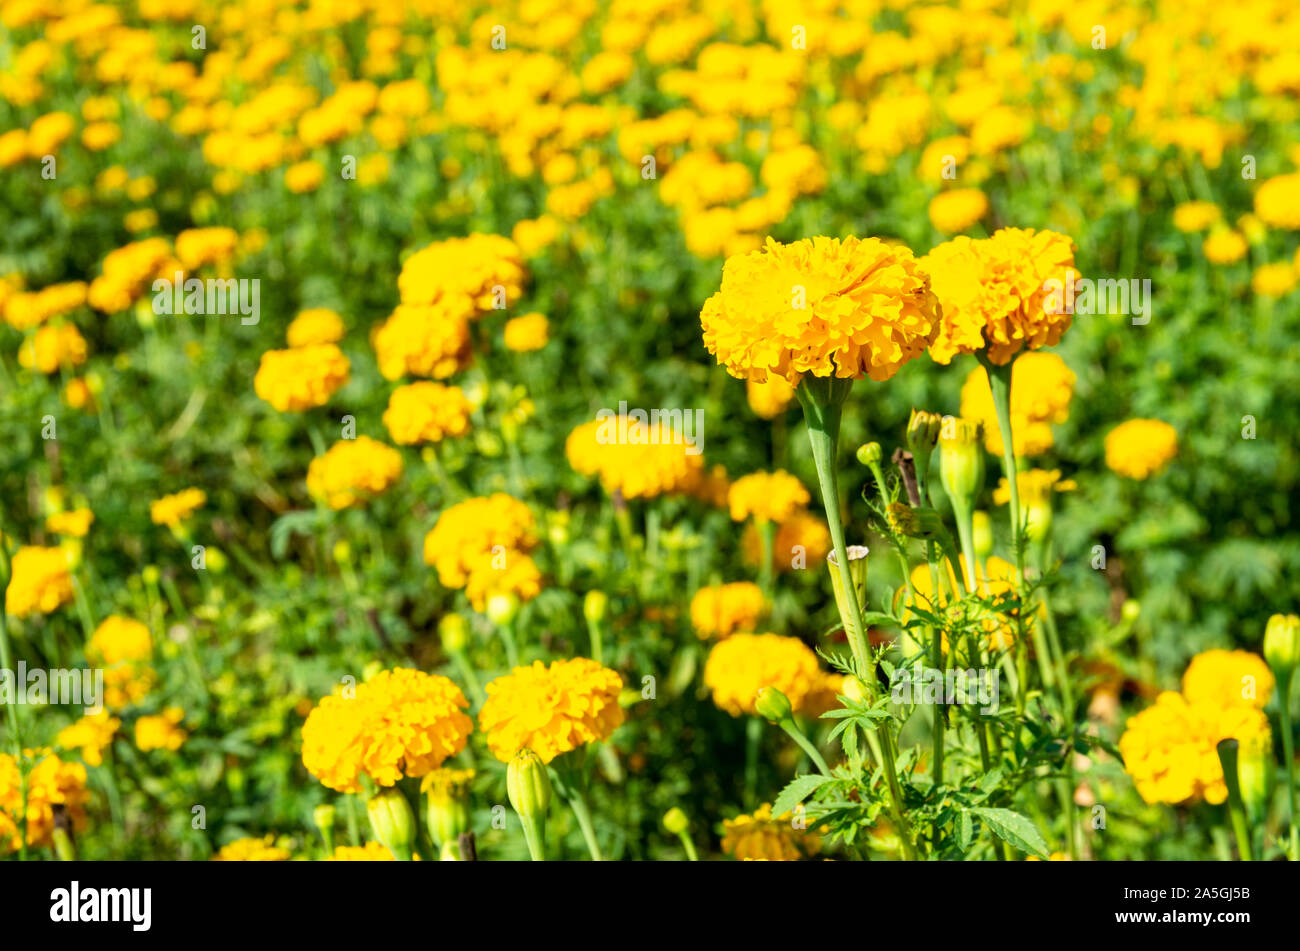 Blumen wiese mit Tagetes (Tagetes erecta) - ausgewählte Fokus - text Raum Stockfoto